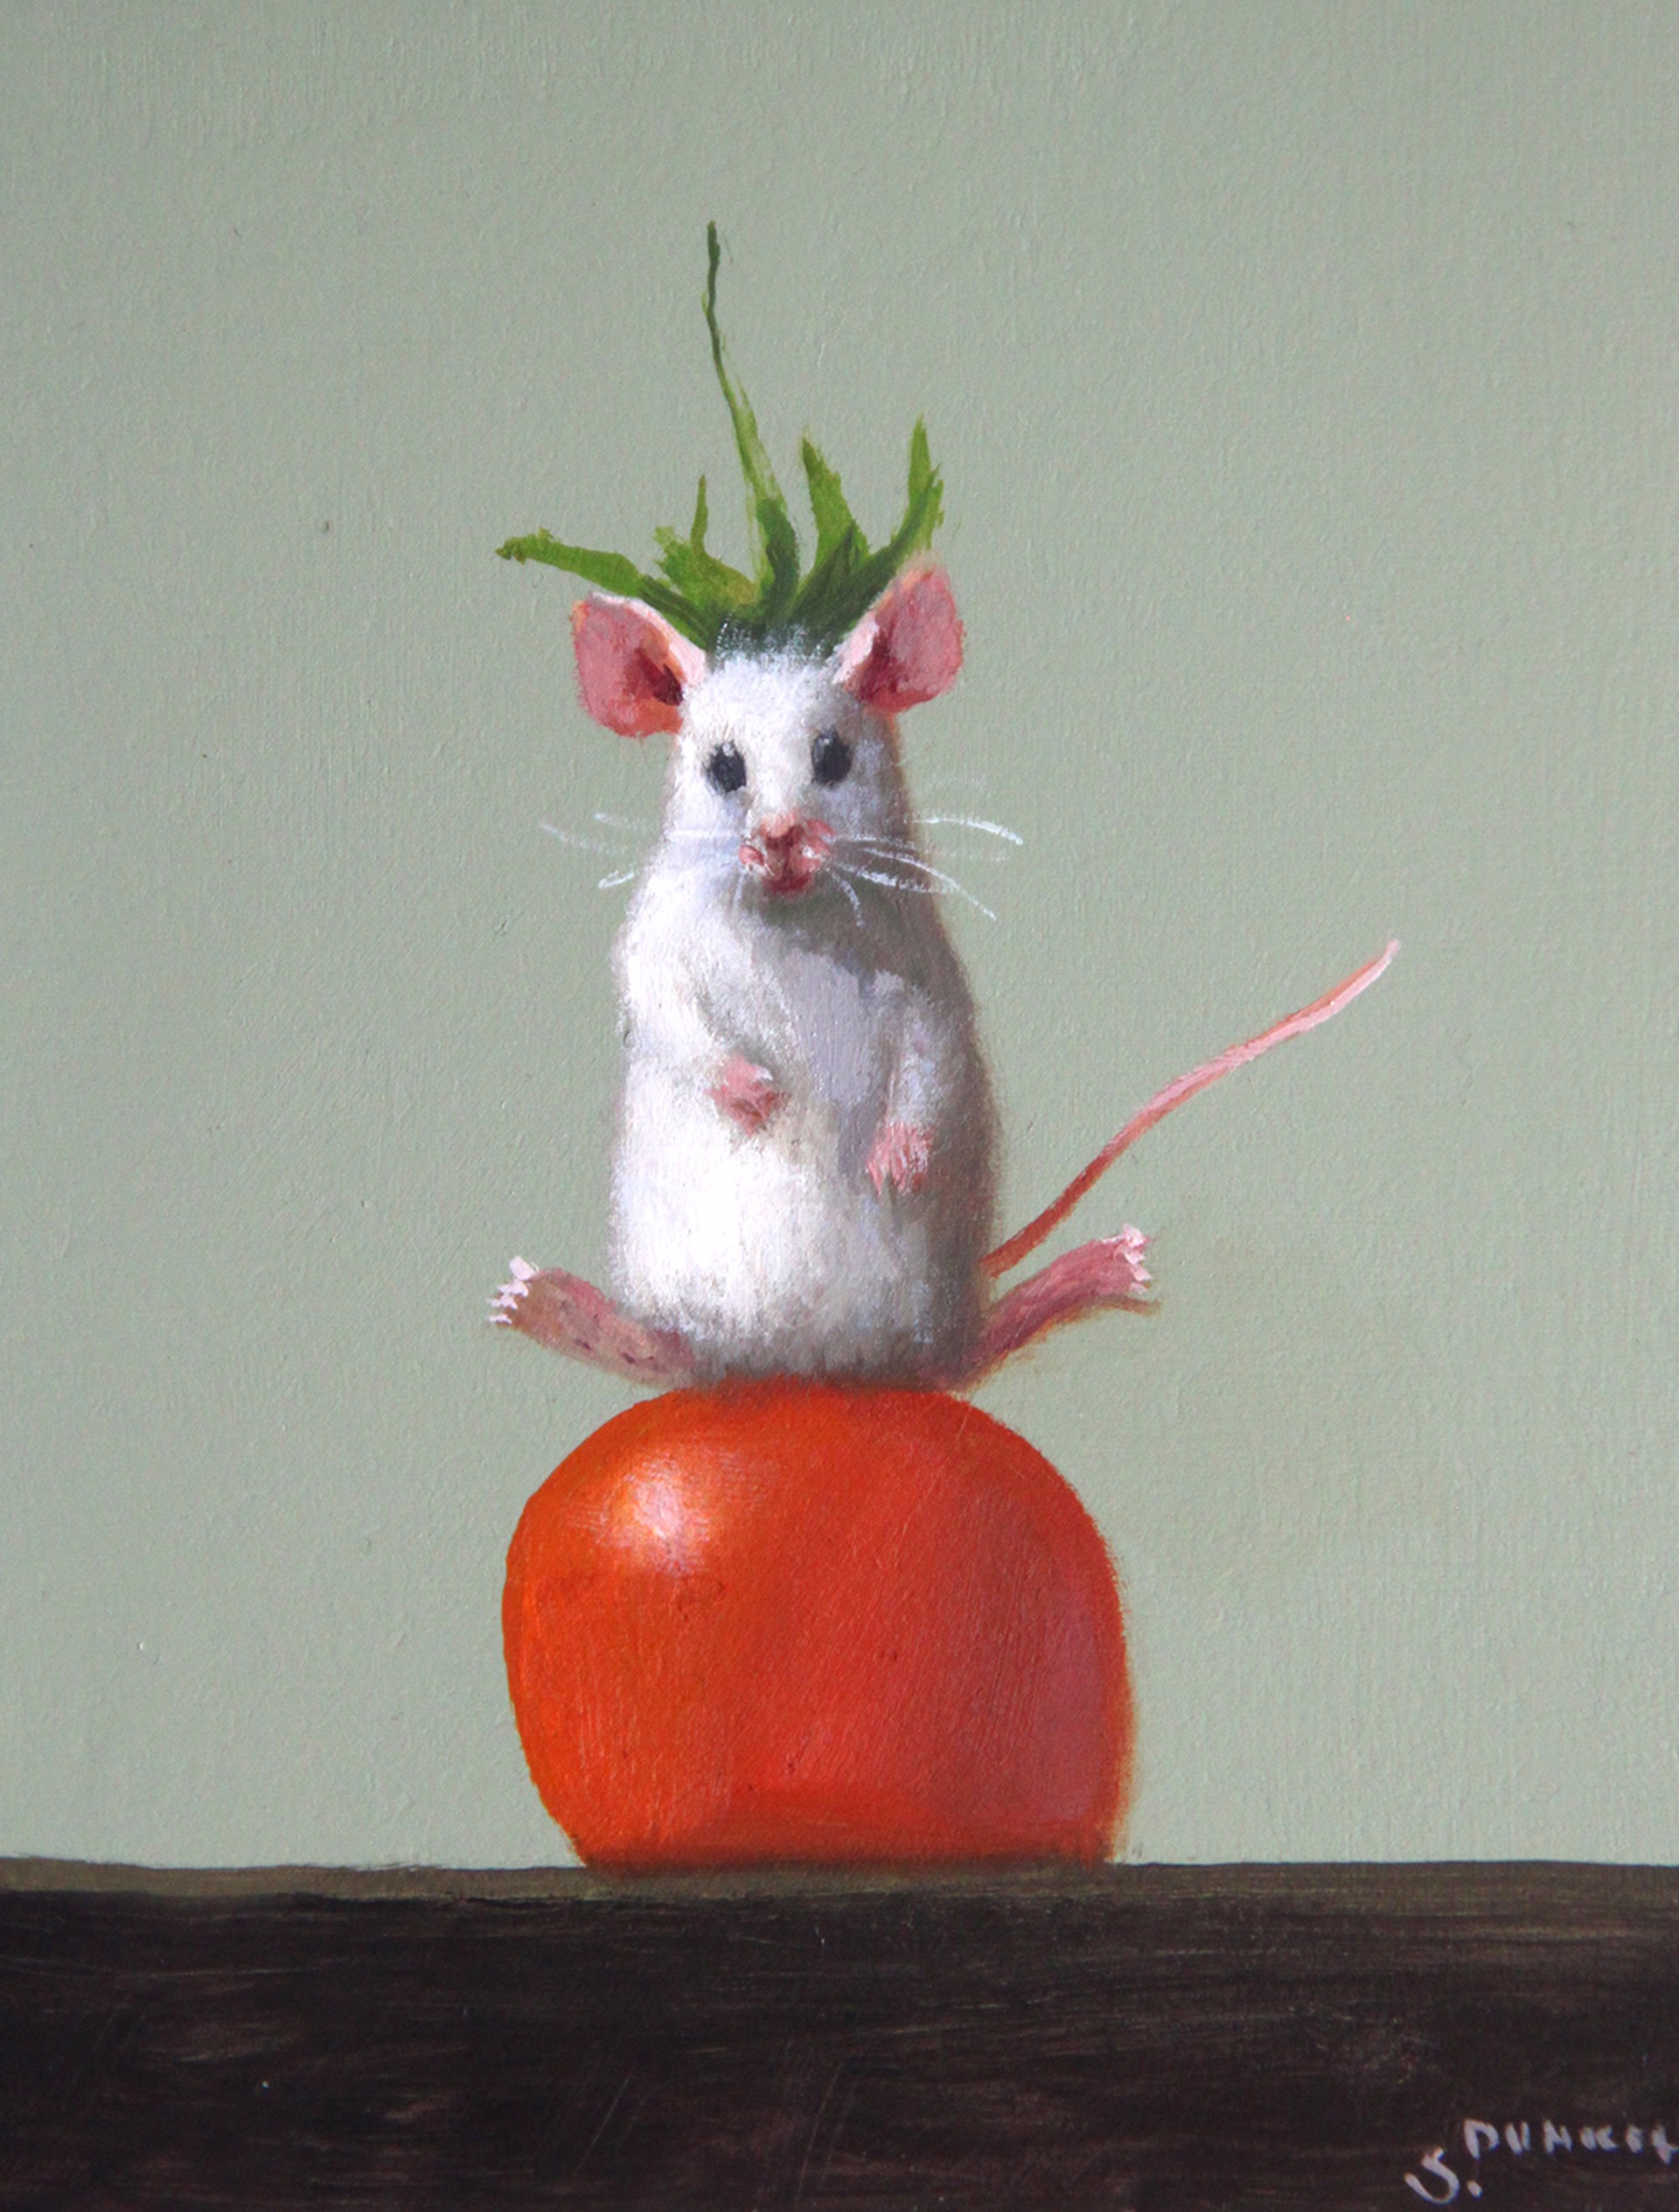 King of Tomato by Stuart Dunkel